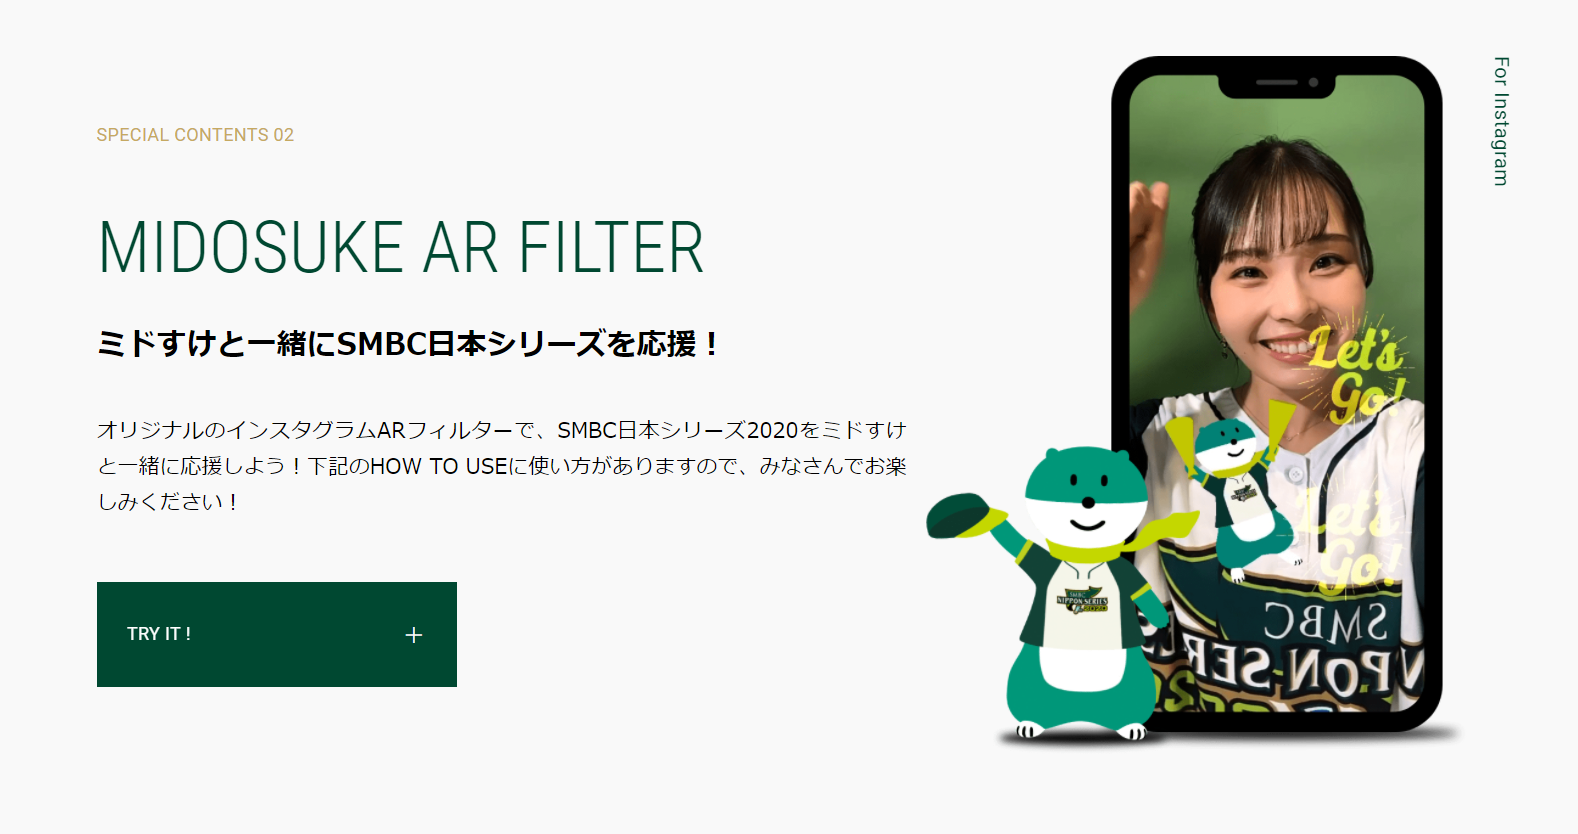 三井住友銀行 Smbc が日本シリーズ応援用のinstagramのarエフェクトを公開 Xr広告マガジン